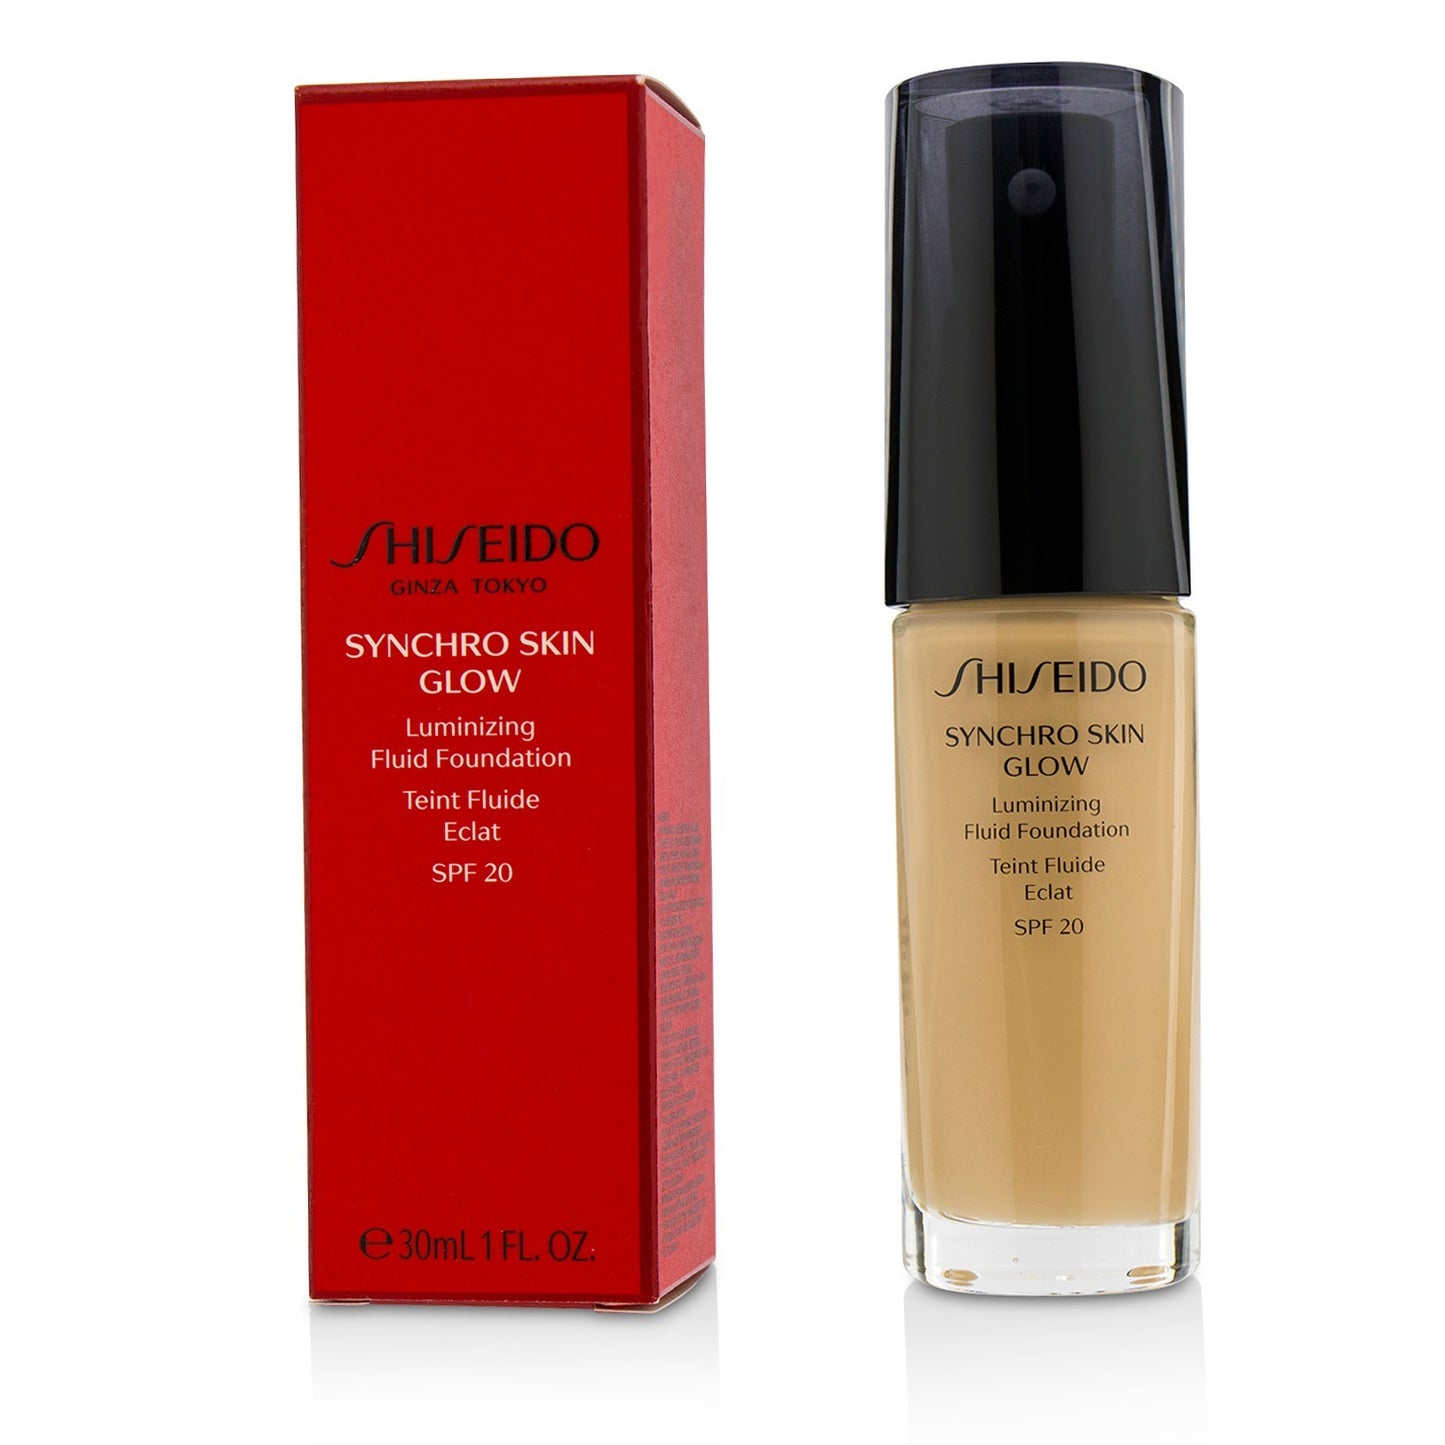 Shiseido Synchro Skin Glow Luminizing Fluid Foundation SPF 20 - N2 Neutral 30 ml / 1 oz